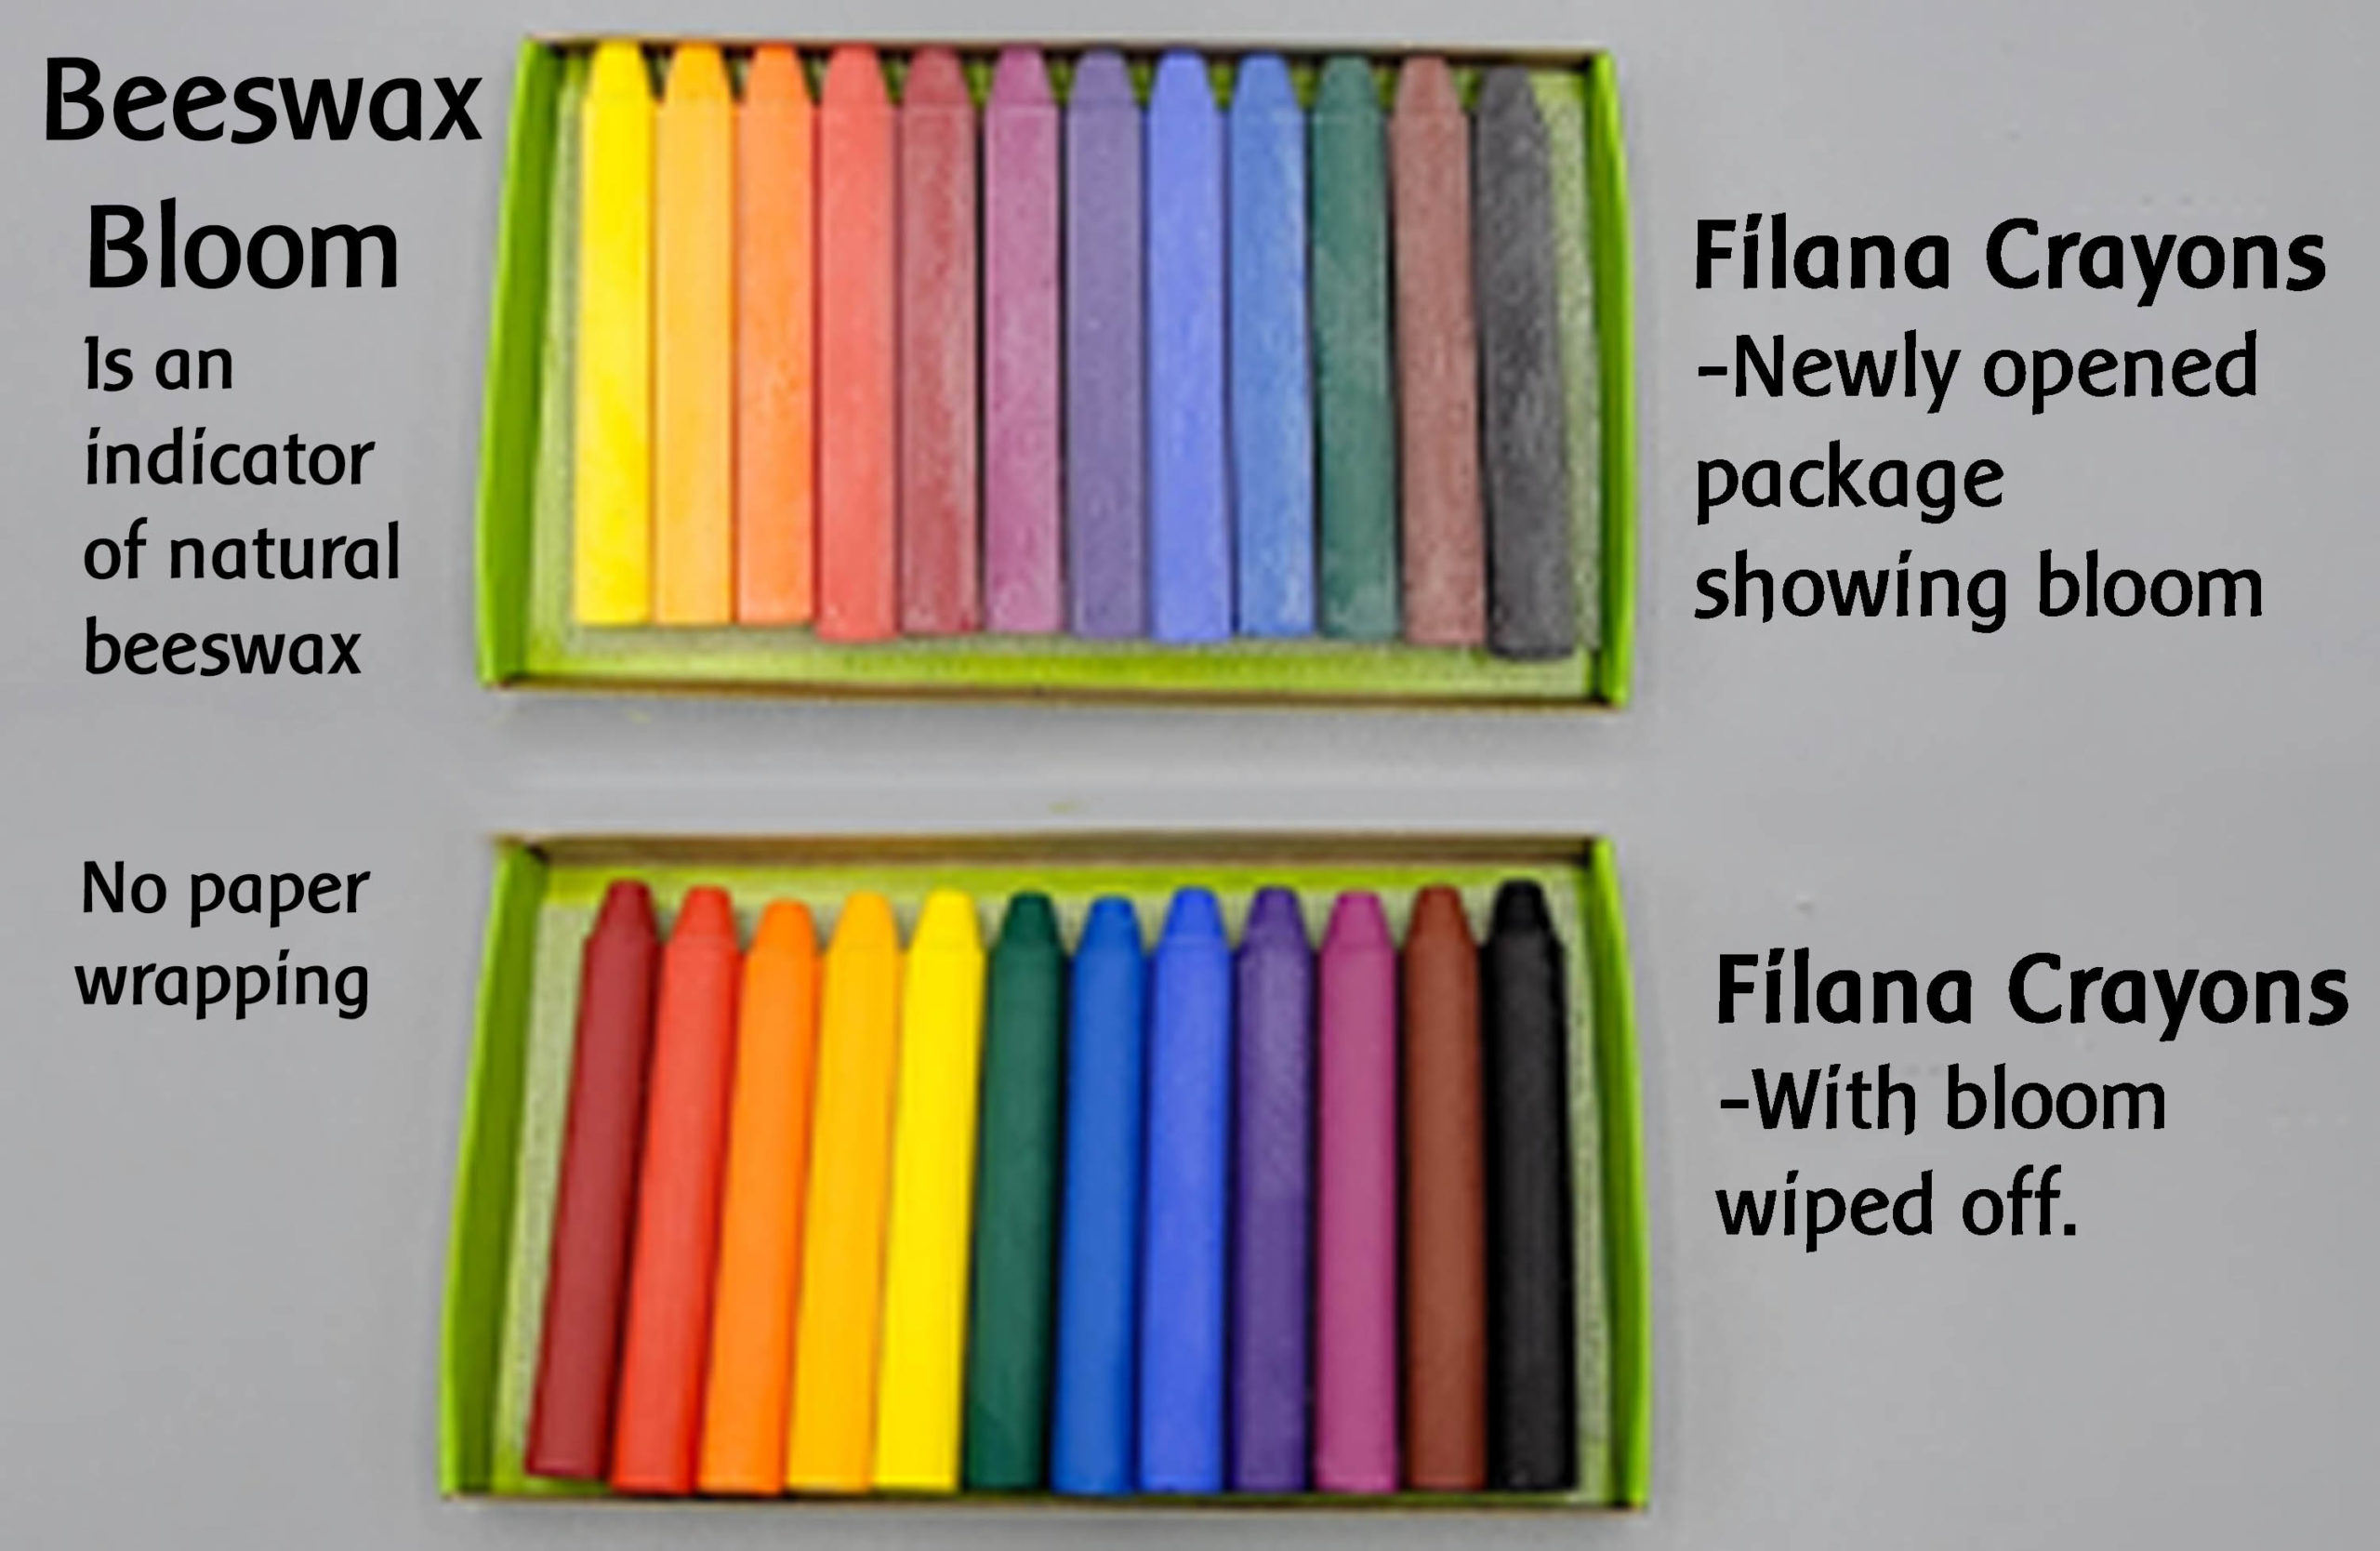 Filana Stick Beeswax Crayons -8 Assorted